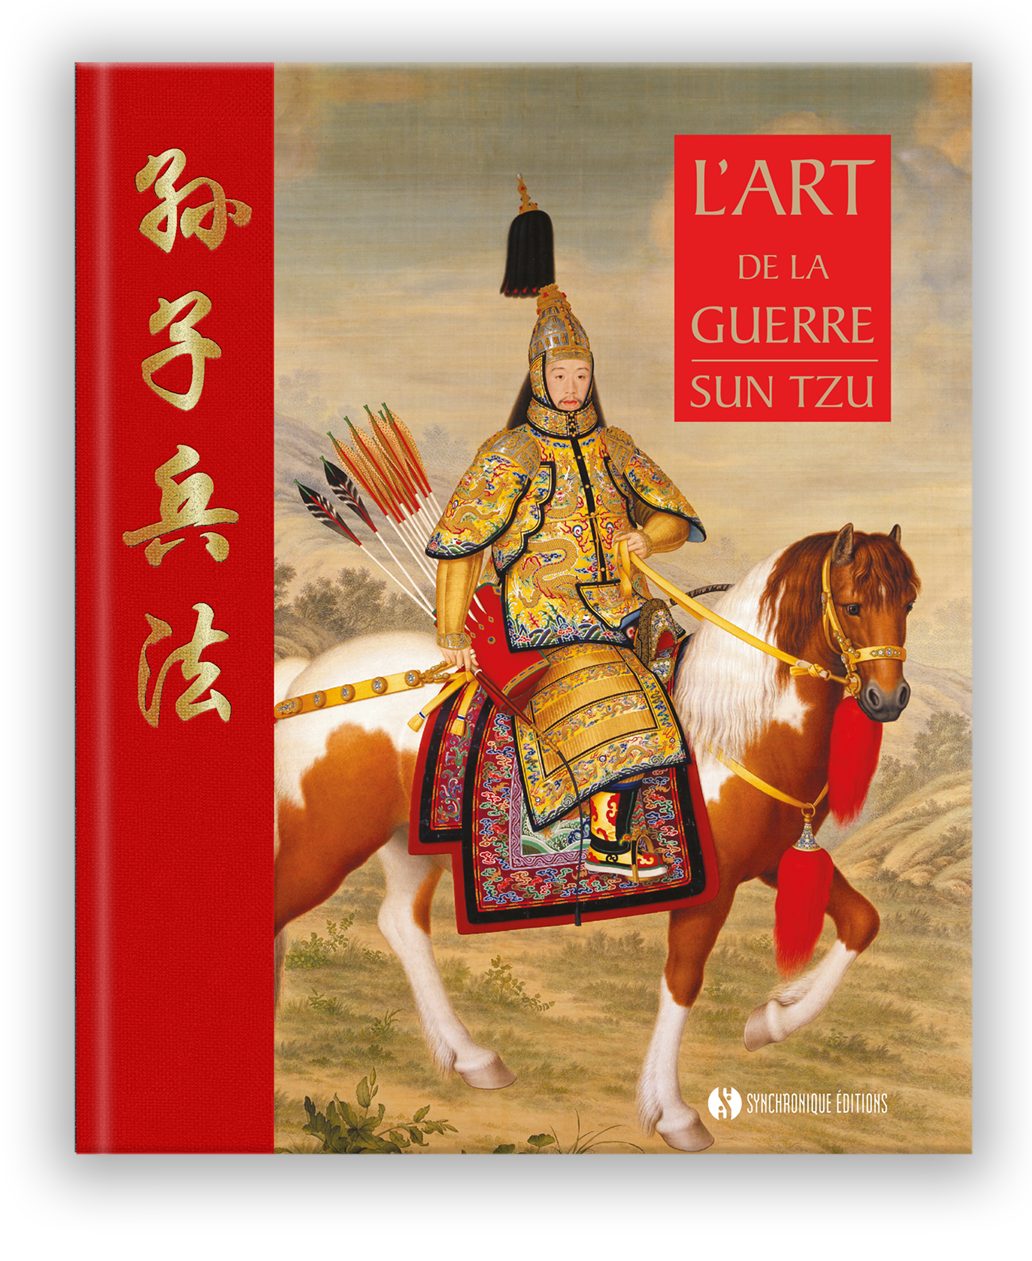 L’art de la guerre de Sun Tzu est paru chez Synchronique éditions.